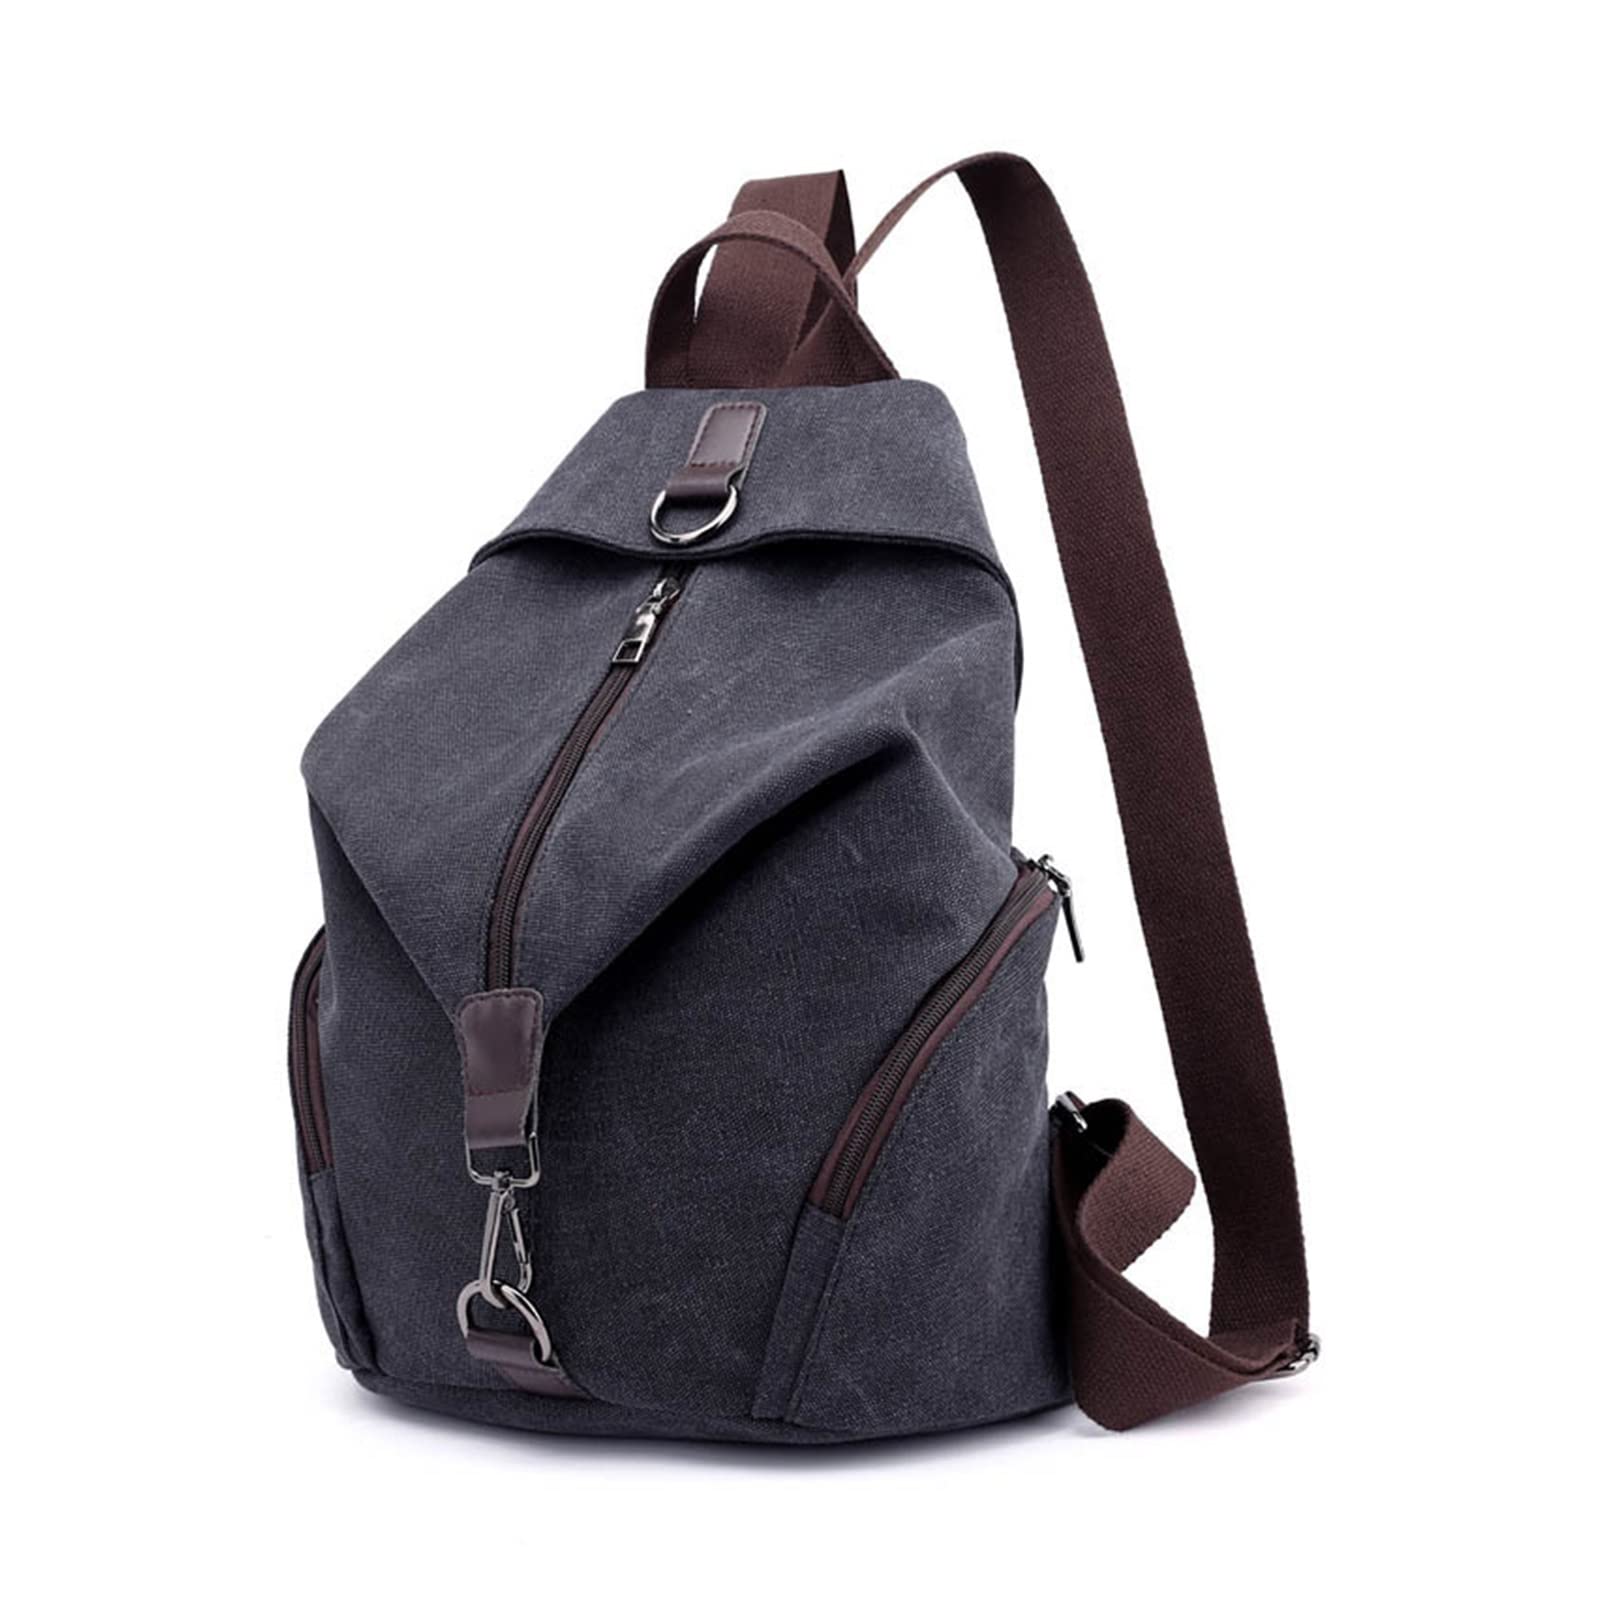 送料無料ZZZYW Multifuction Casual Backpack for Women Large Capacity Shoulder Bag Color Black Size 27cm x 15cm x 35c